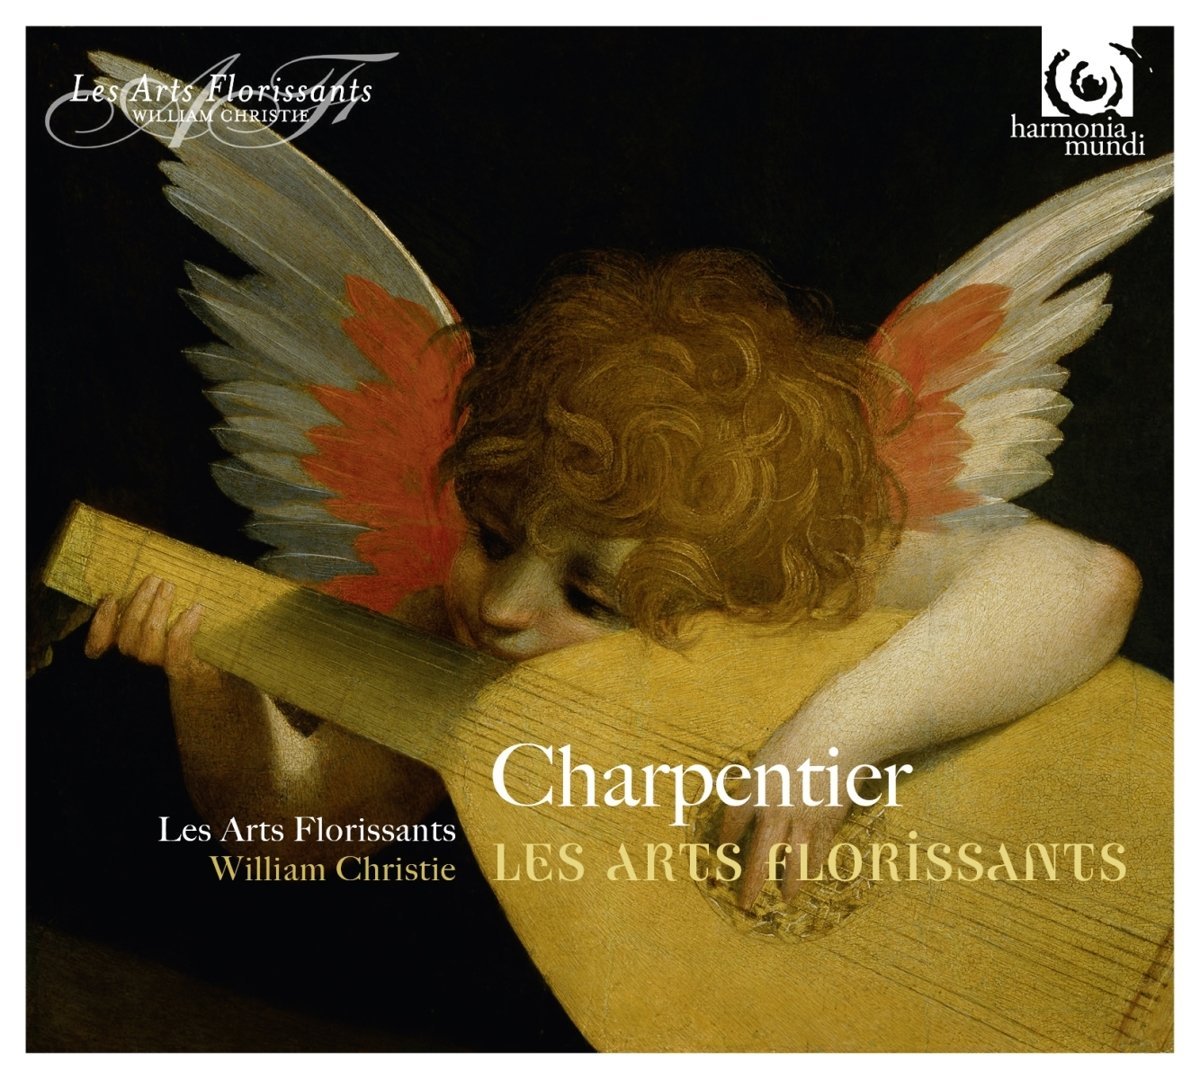 Les Arts Florissants | William Christie, Les Arts Florissants, Marc-Antoine Charpentier